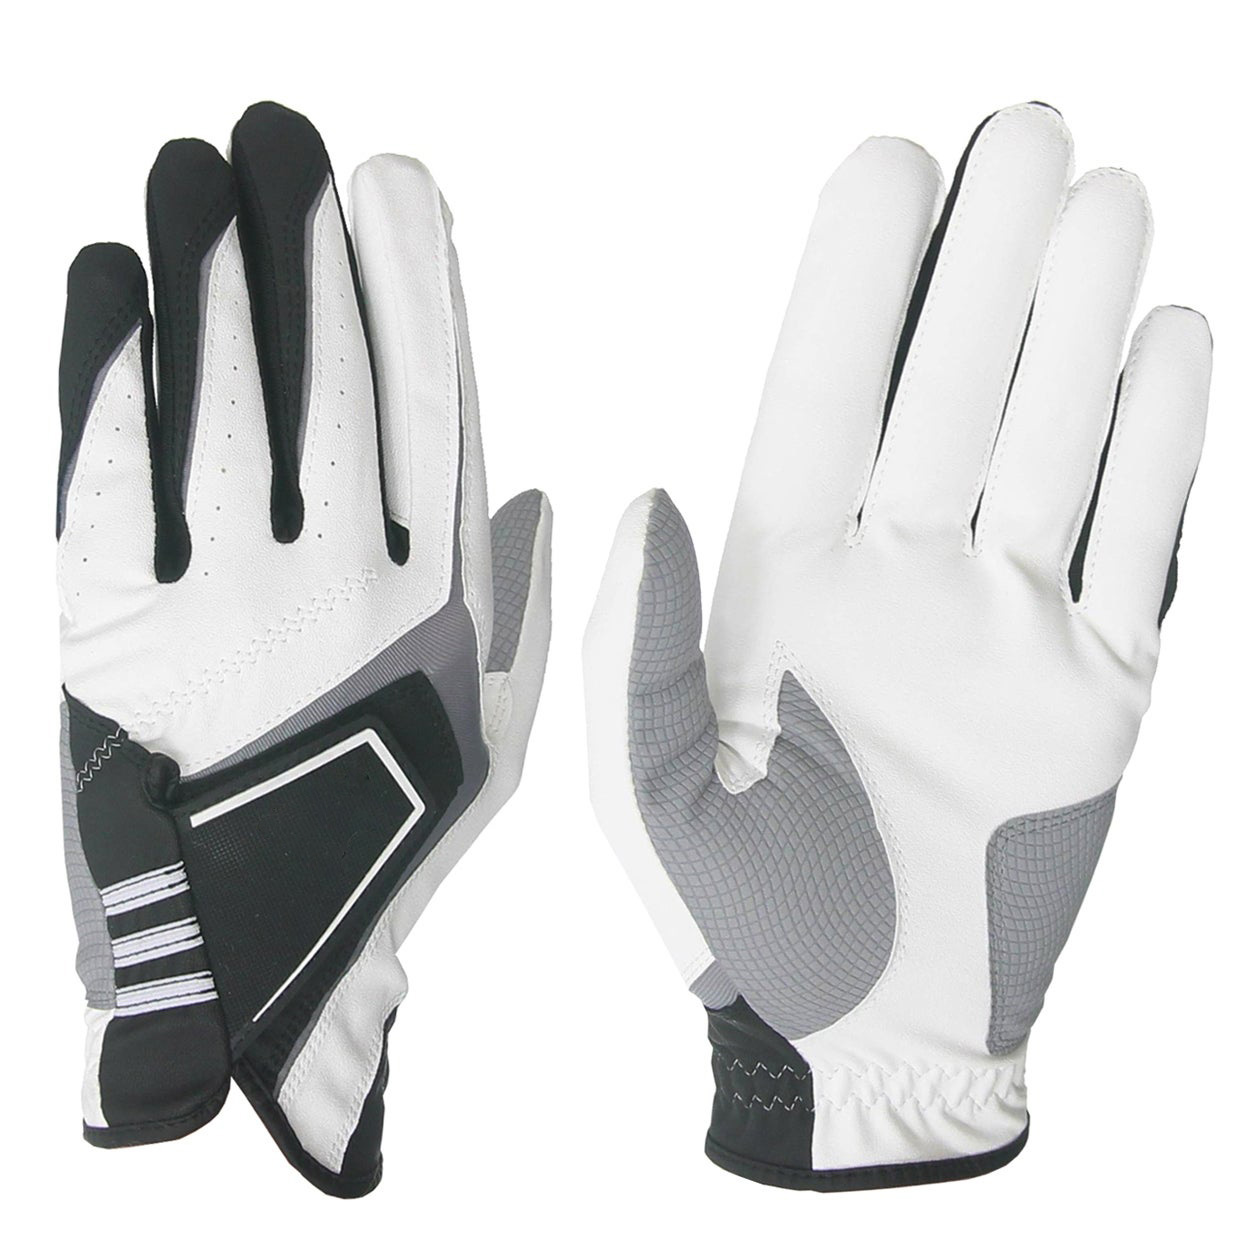 soft sheepskin leather ventilation back adult men's golf gloves